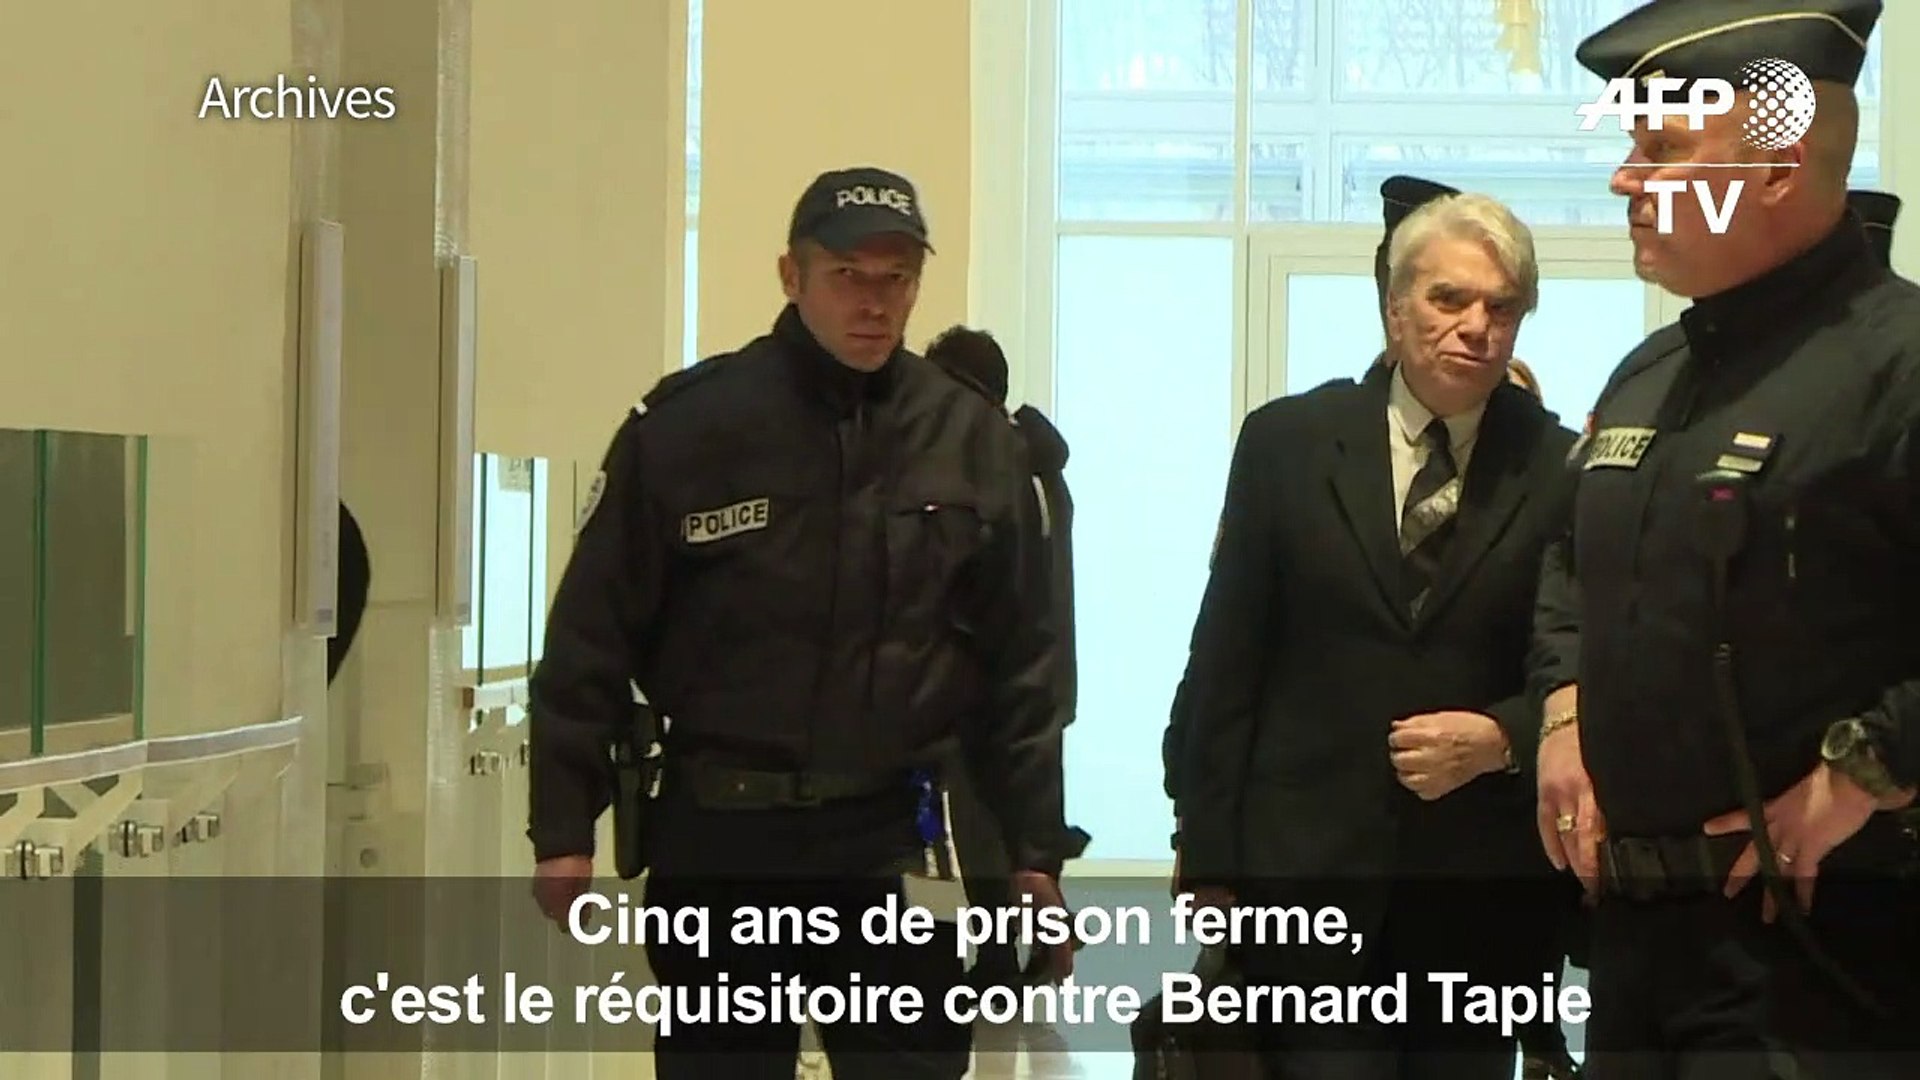 Cinq ans de prison ferme requis contre Bernard Tapie - Vidéo Dailymotion